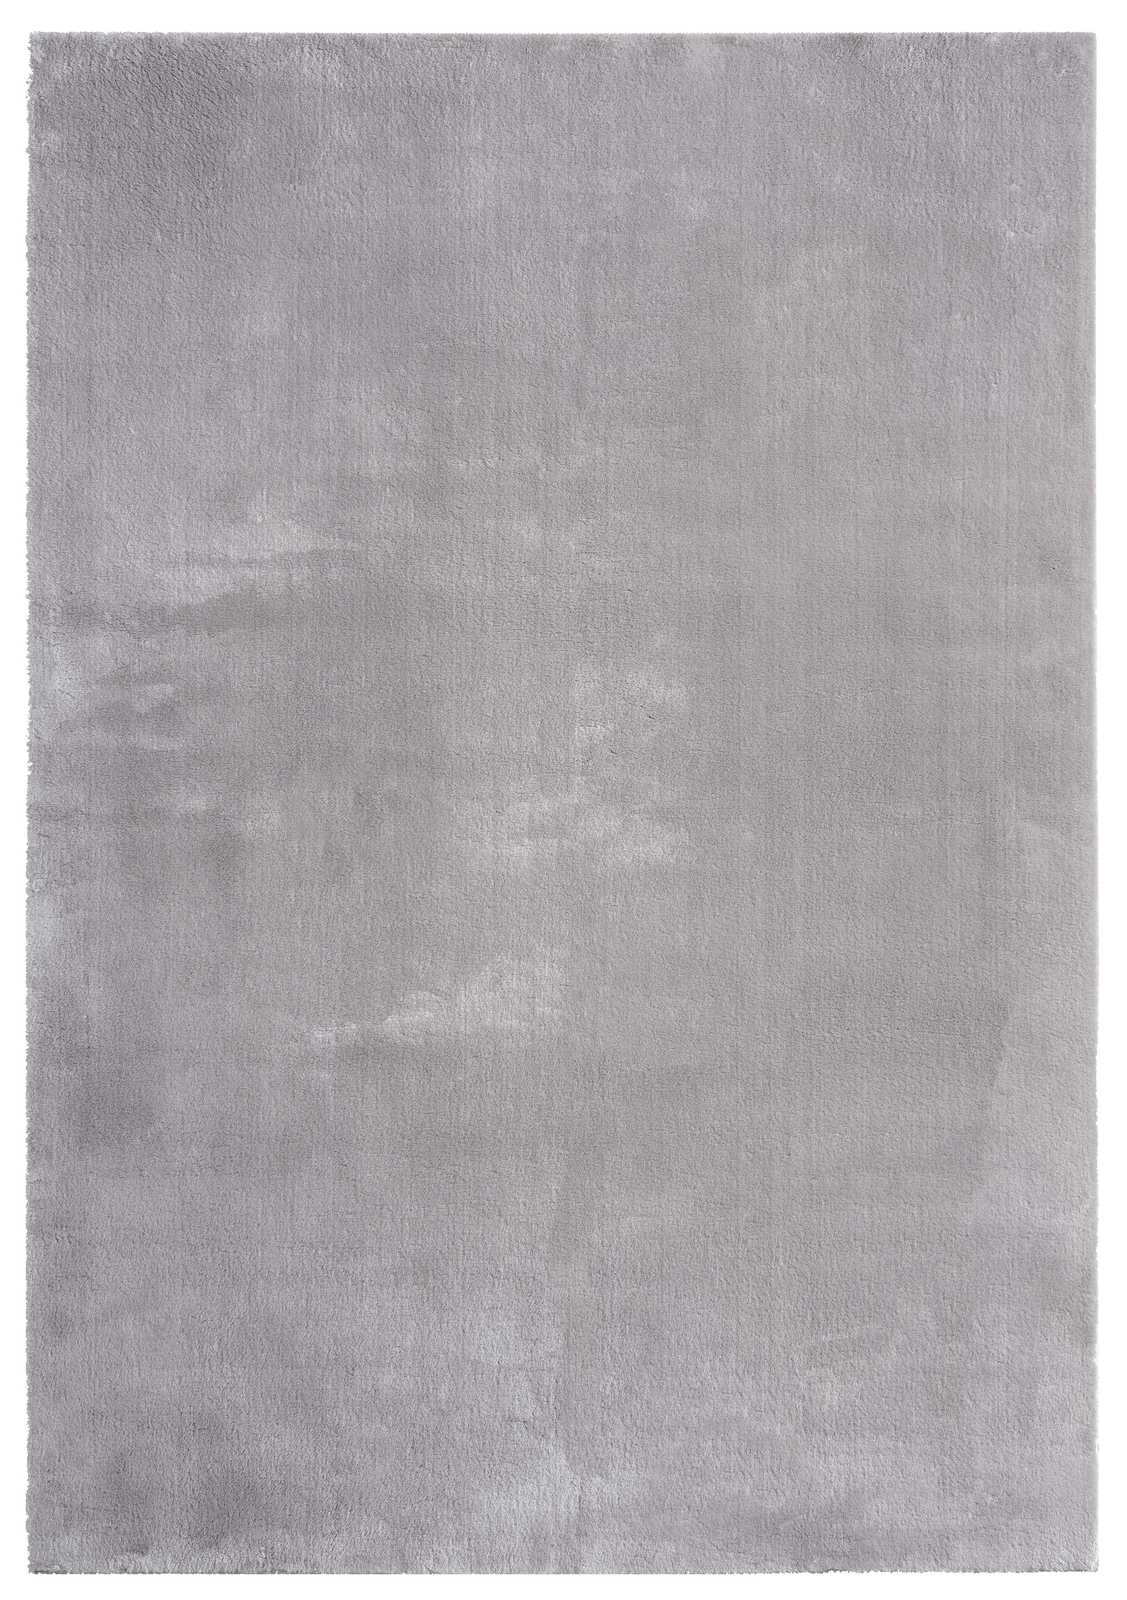             Fijn hoogpolig tapijt in grijs - 150 x 80 cm
        